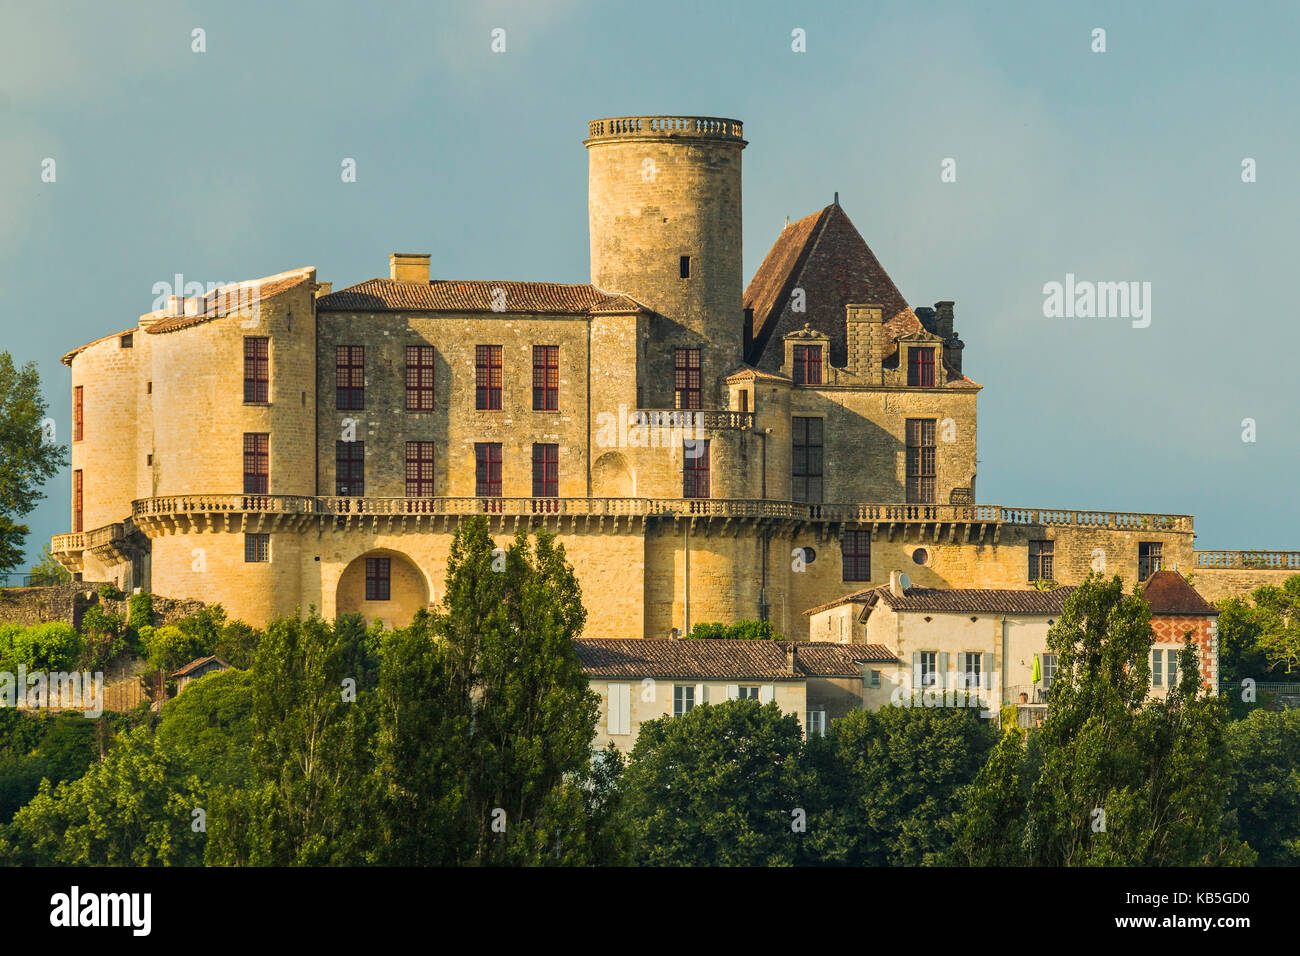 Chateau de Duras castle, a 12th century fortress, Duras, Lot-et-Garonne, Aquitaine, France Stock Photo